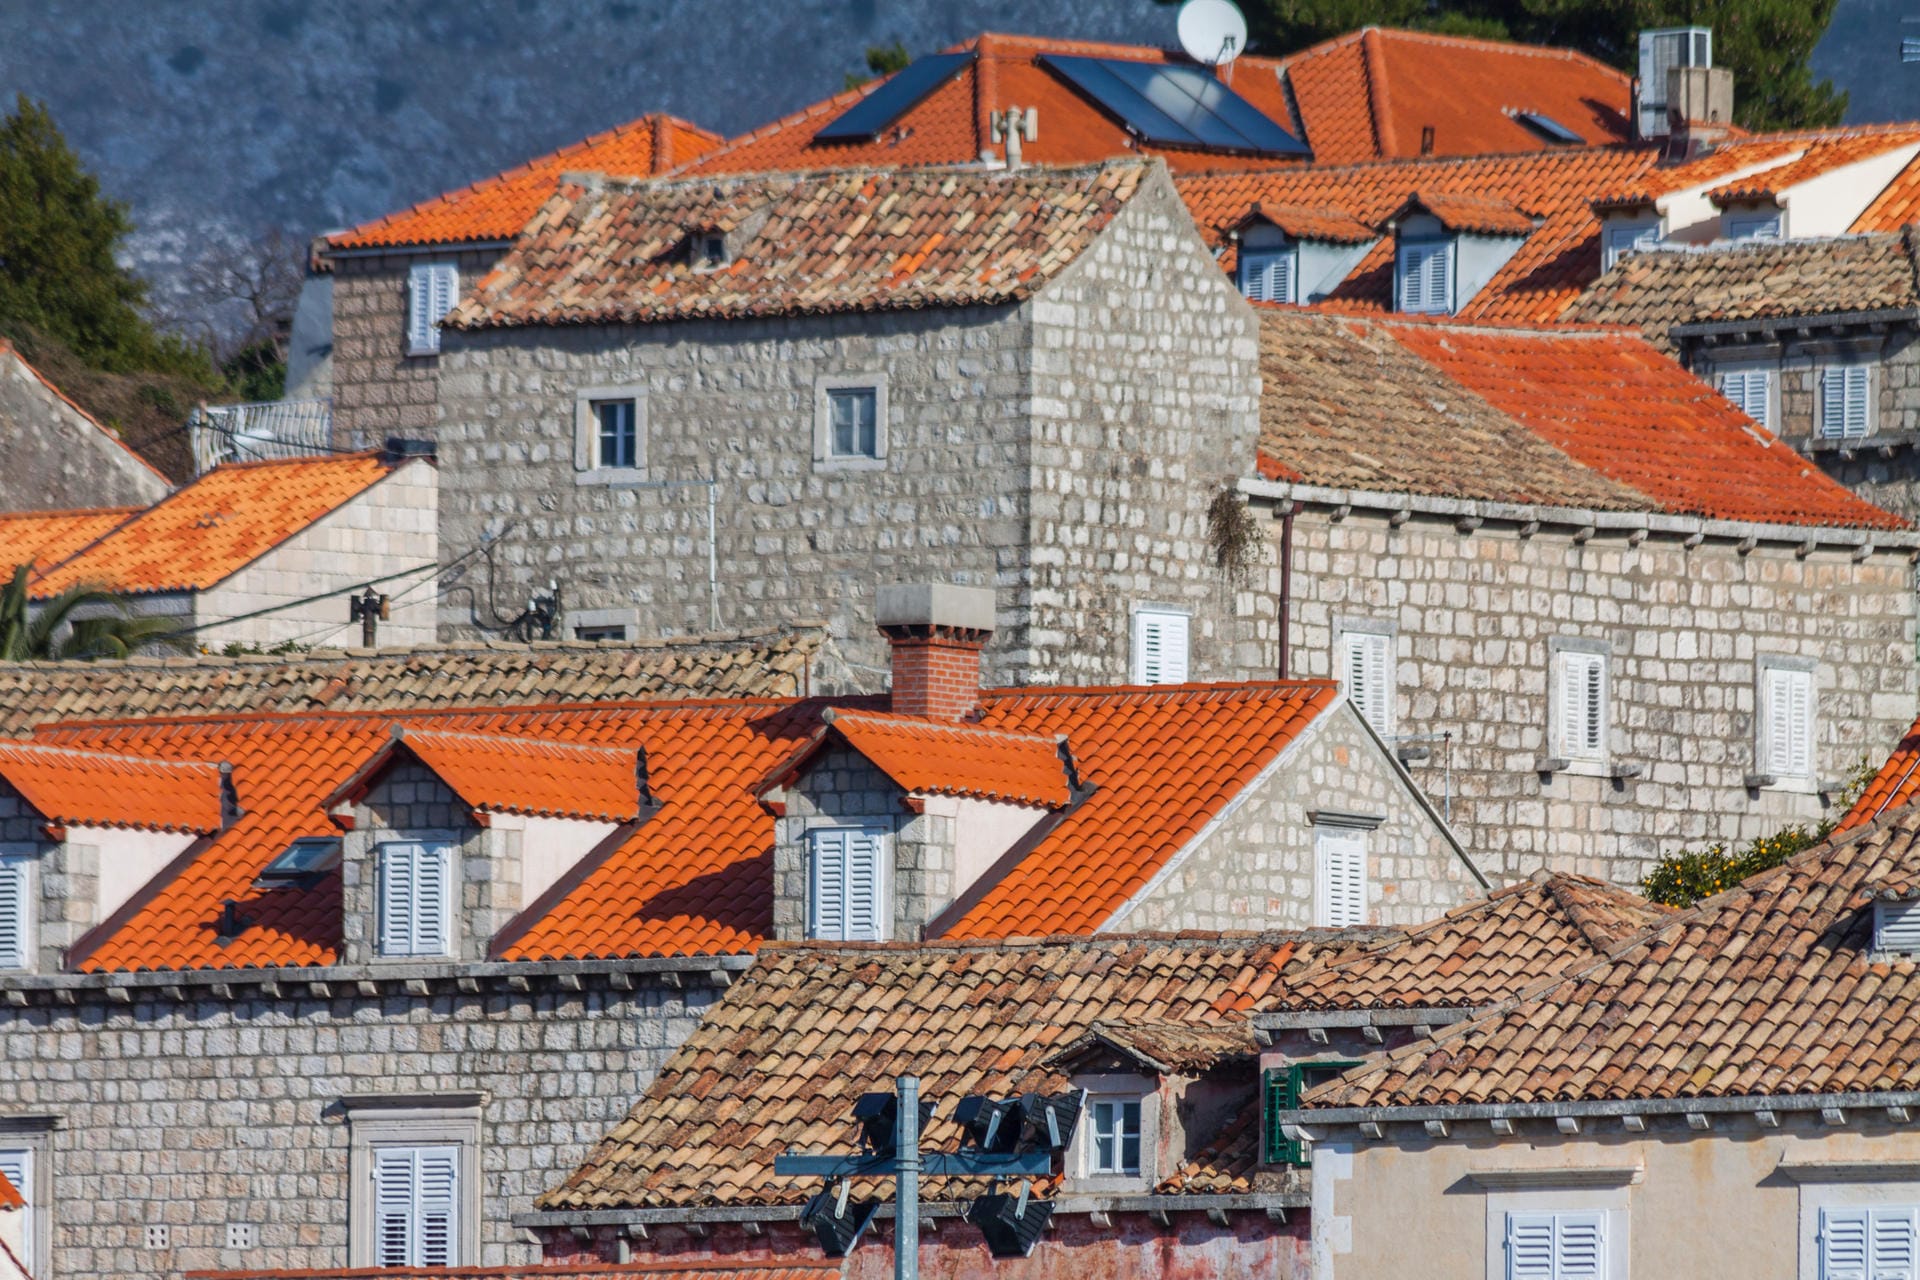 Dächermeer in Dubrovnik: Es gibt viele beeindruckende Regionen auf dieser Erde, aber die Dubrovniker sind davon überzeugt, dass ihre am schönsten ist.